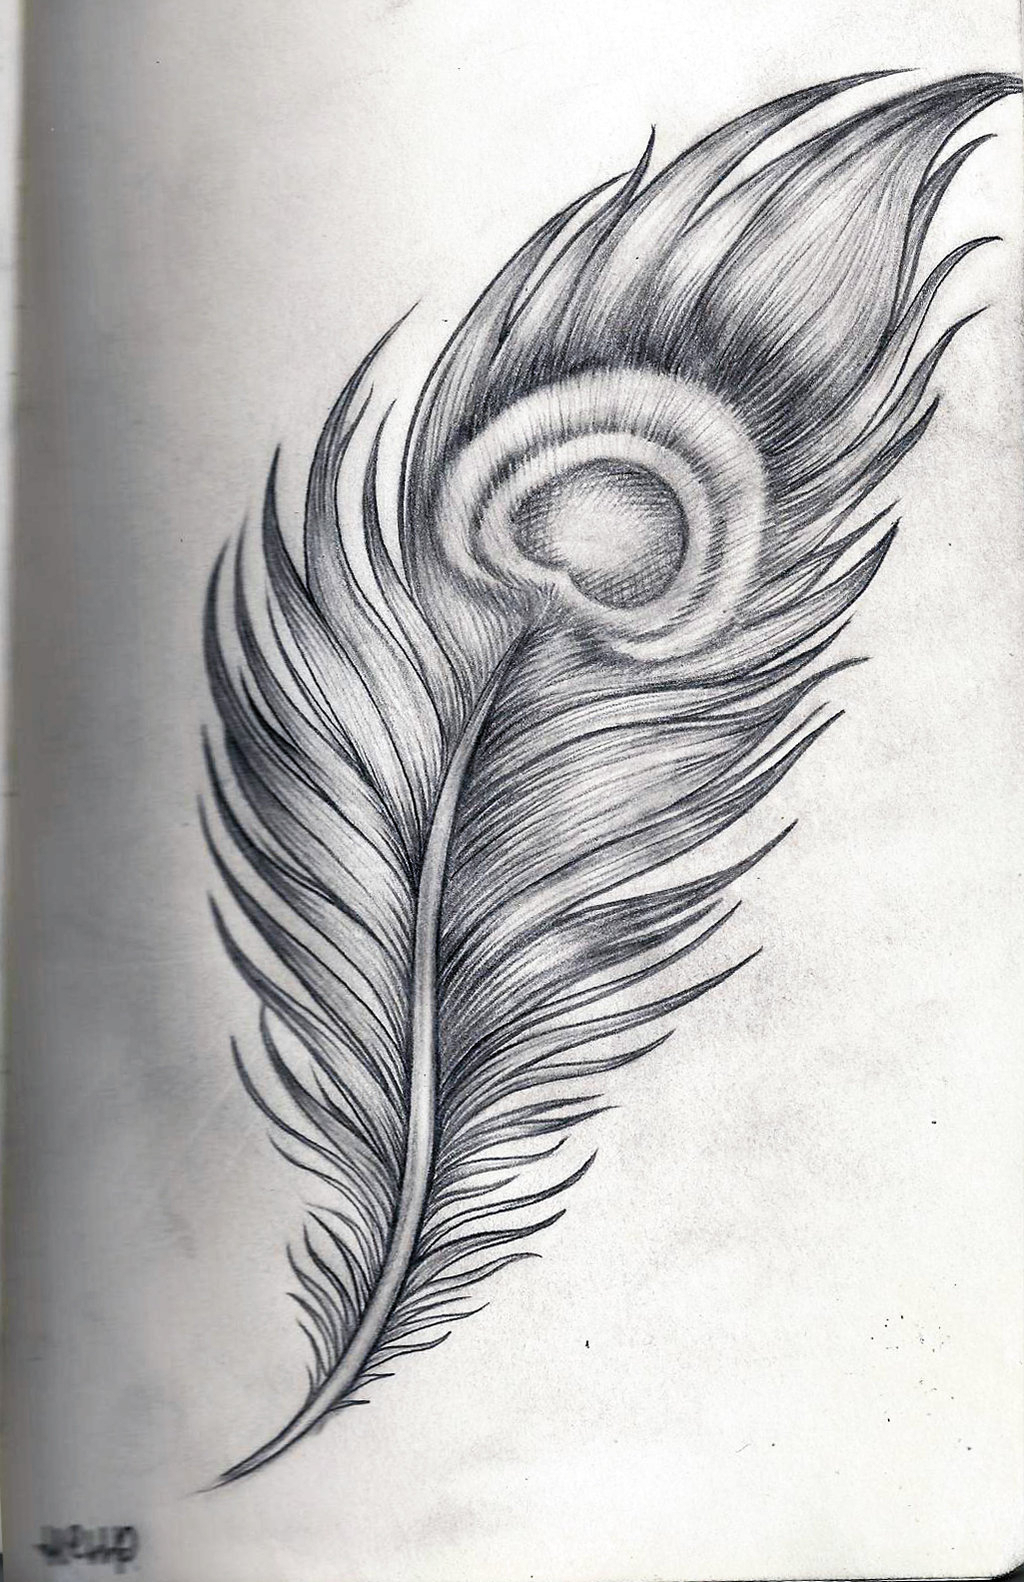 Peacock Design Pencil Sketch ~ Peacock Pencil Drawing Design | Bodbocwasuon